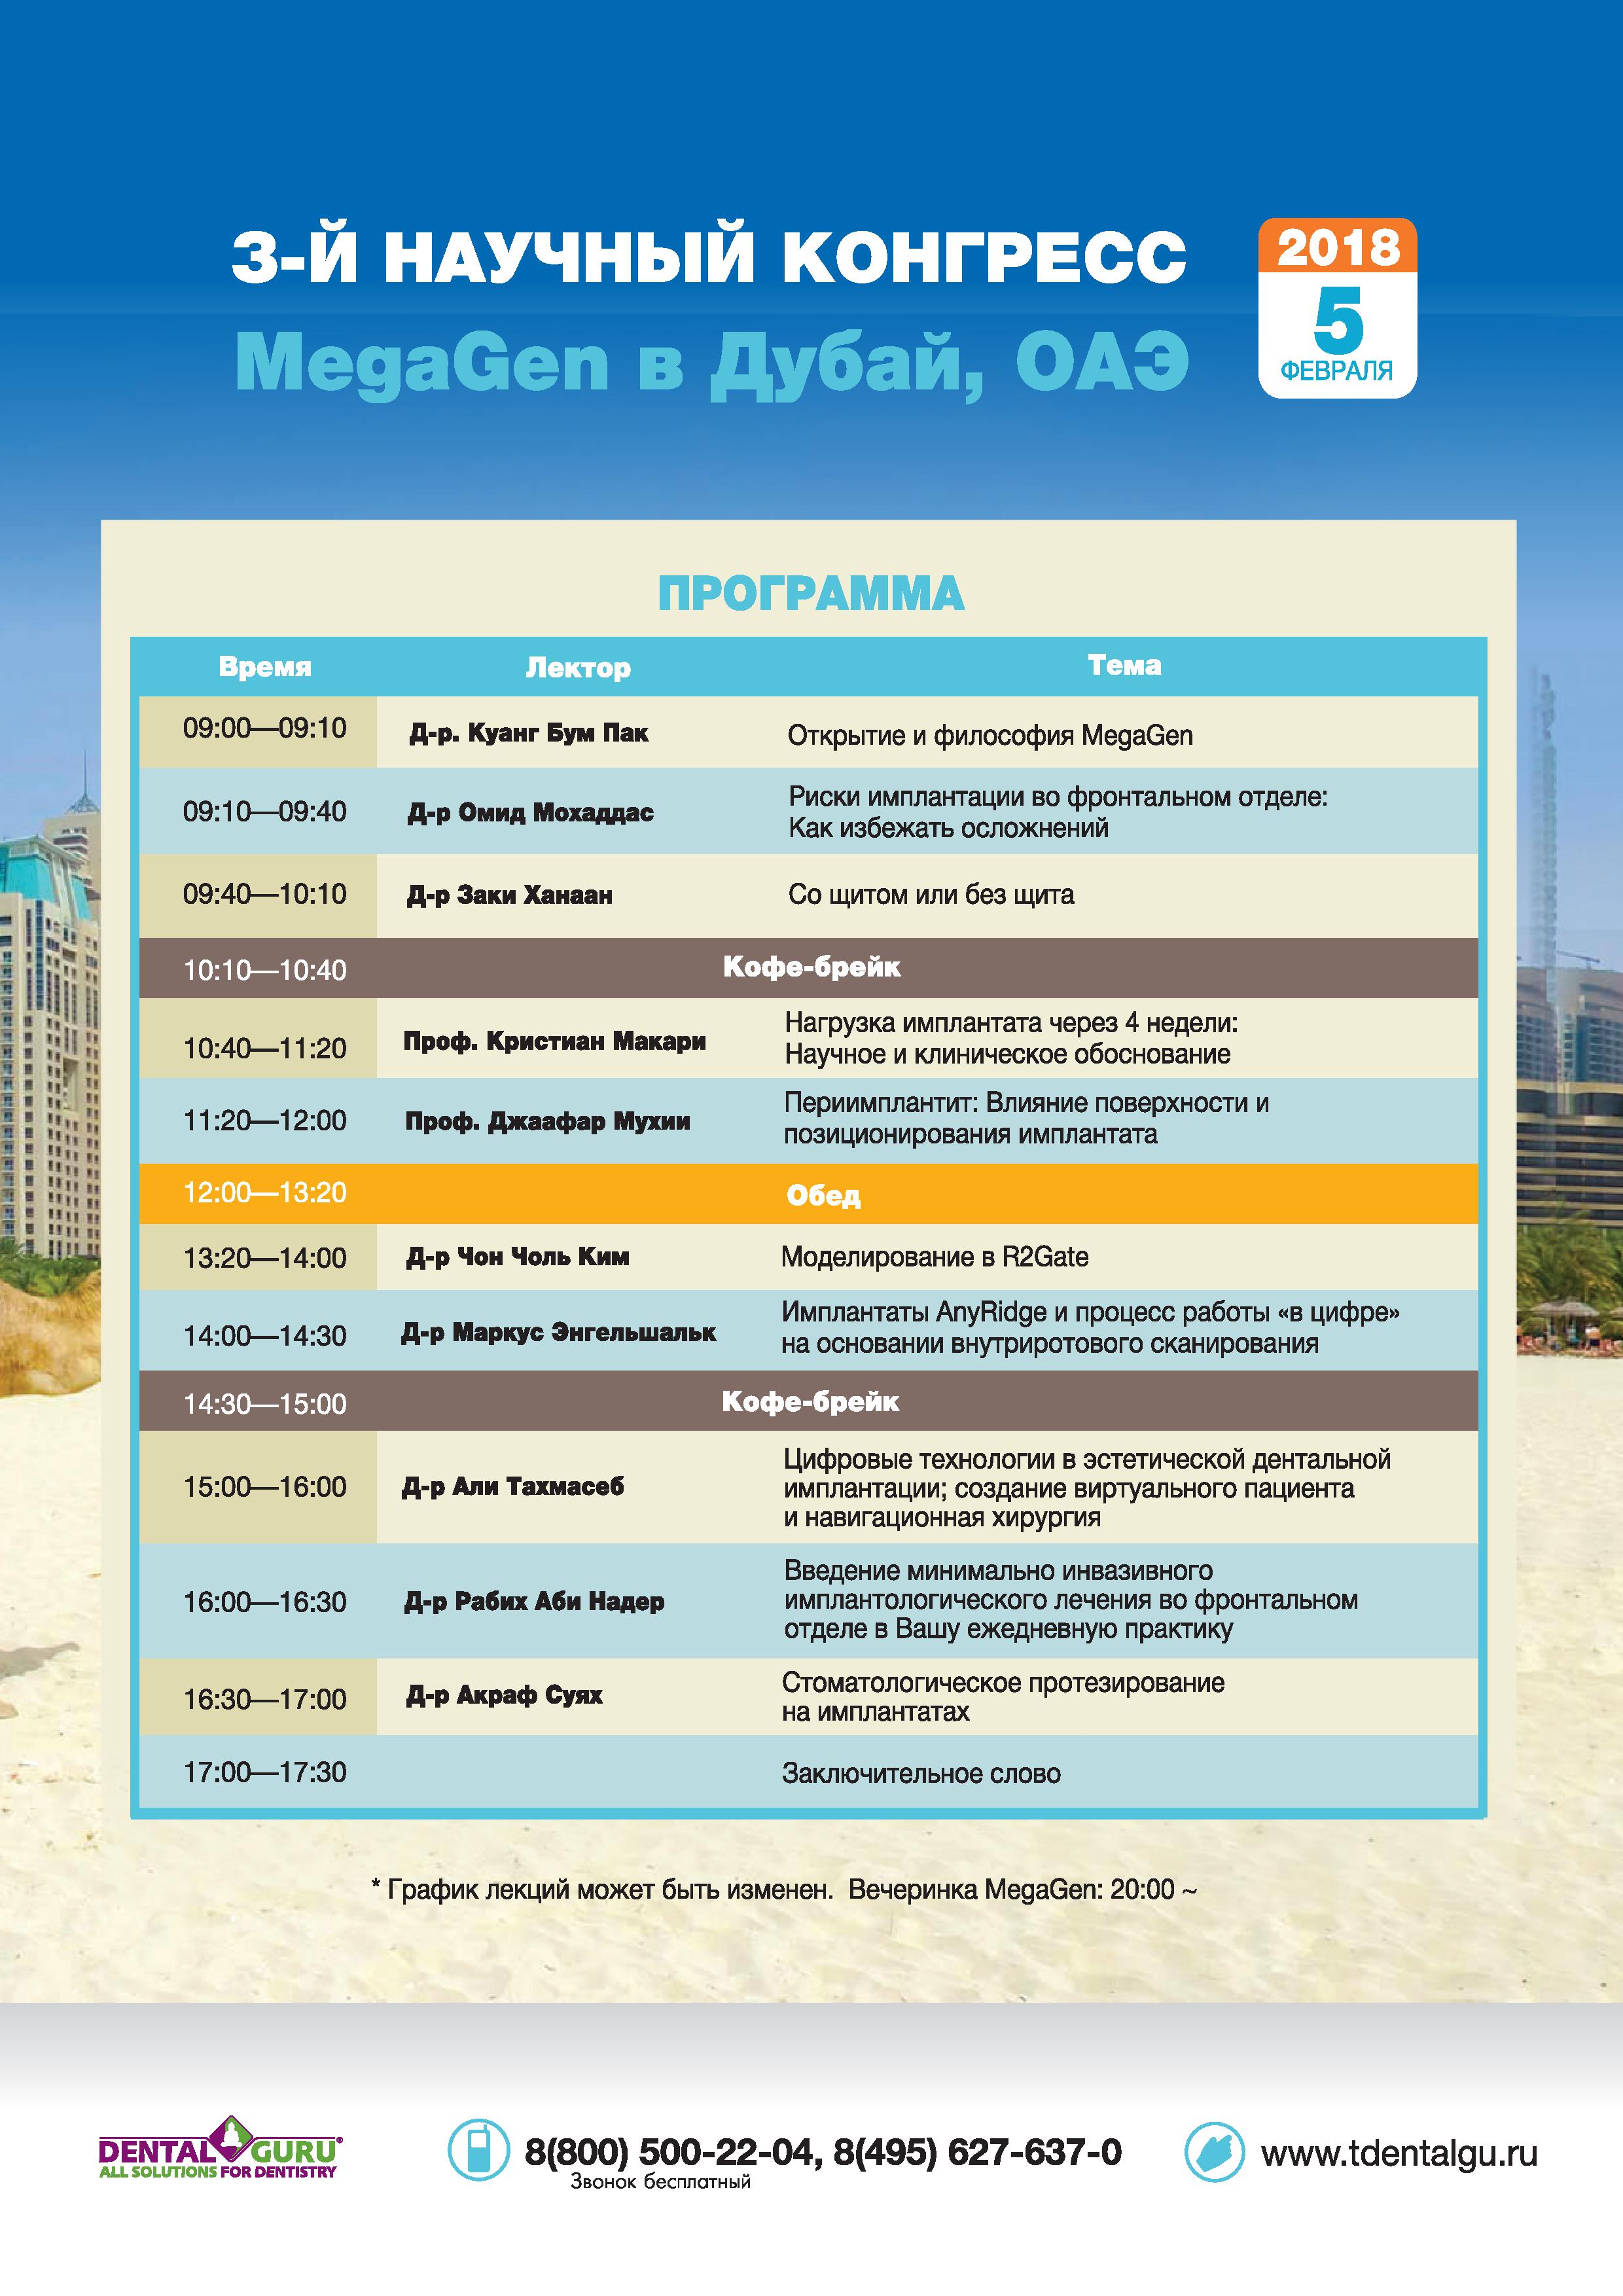 3-й международный конгресс  MEGAGEN  в Дубай,  ОАЭ